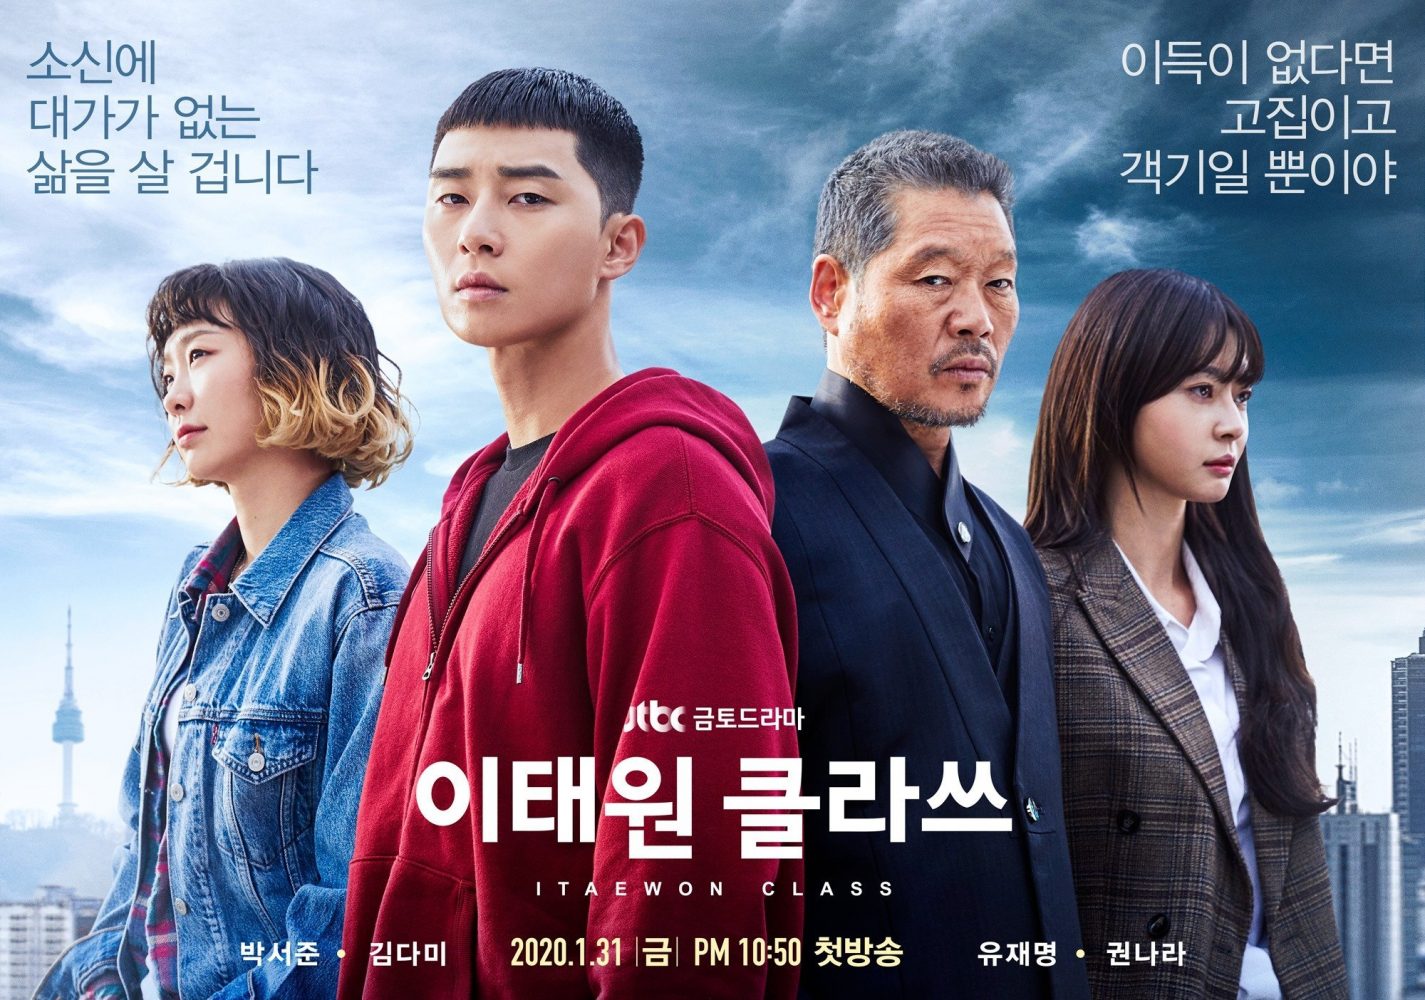 phim cua kwon nara 5 1 e1642396486407 - Top 20 bộ phim hay Hàn Quốc năm 2020 bạn nhất định phải xem